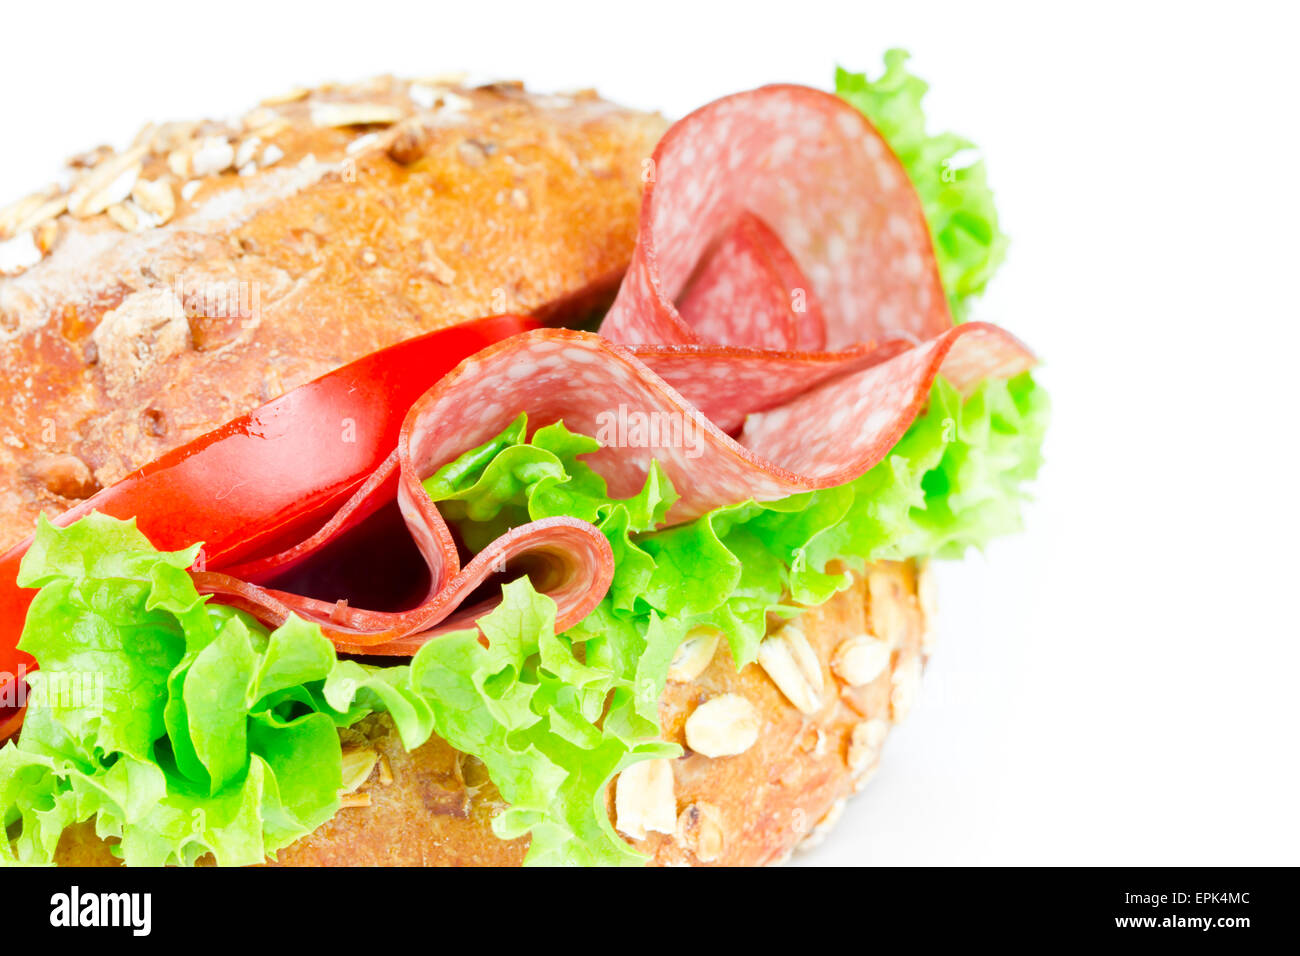 bun with salami Stock Photo